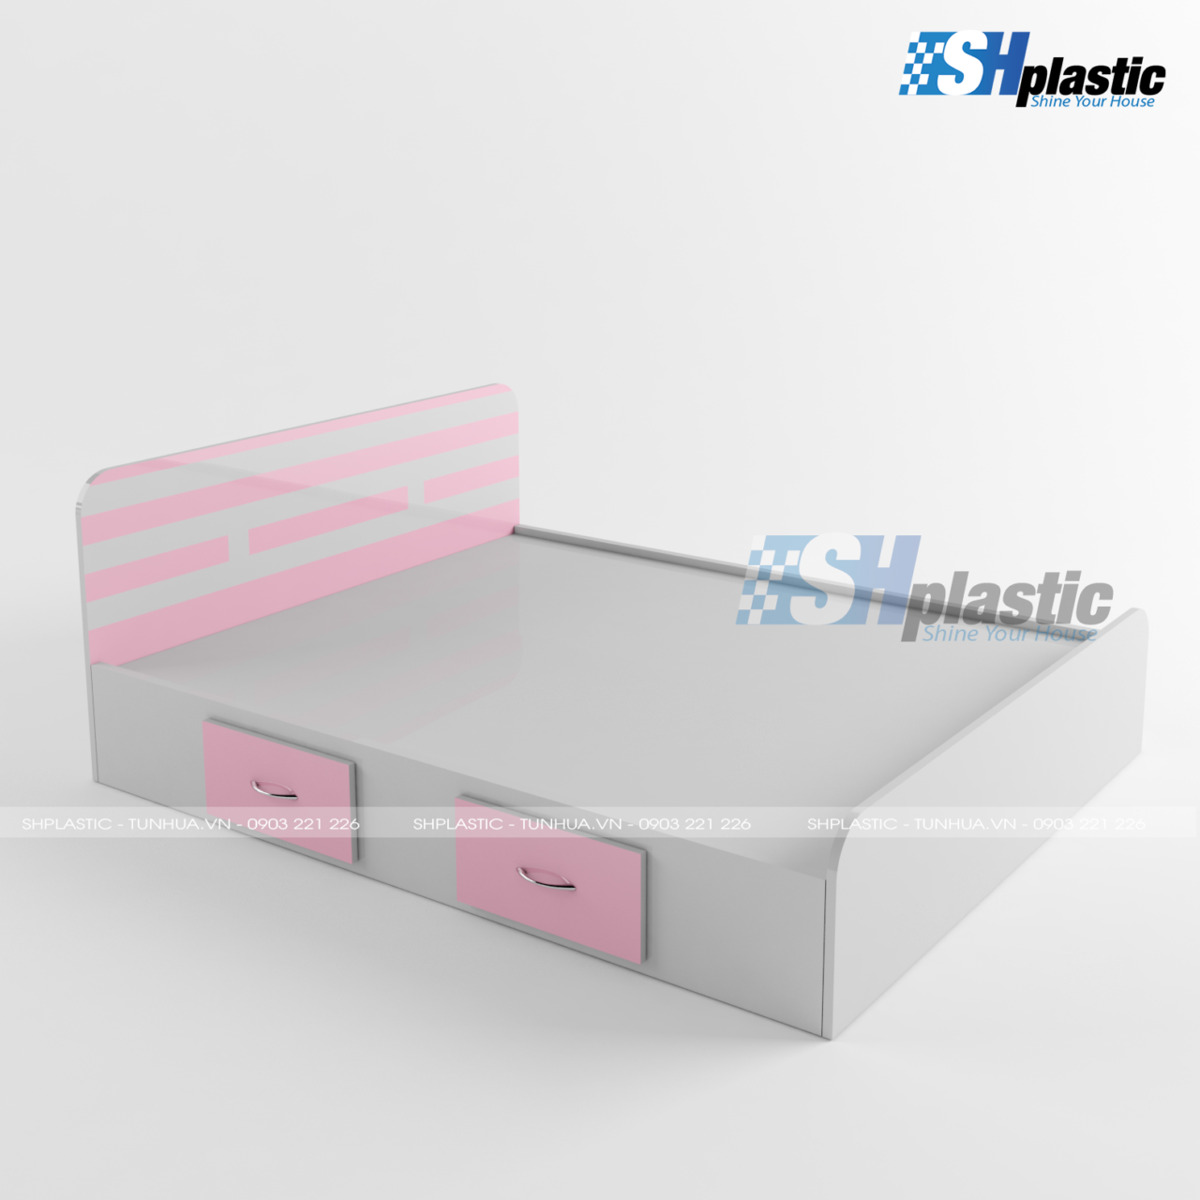 Thiết kế mẫu giường ngủ nhựa đôi cao cấp SHPlastic GN12